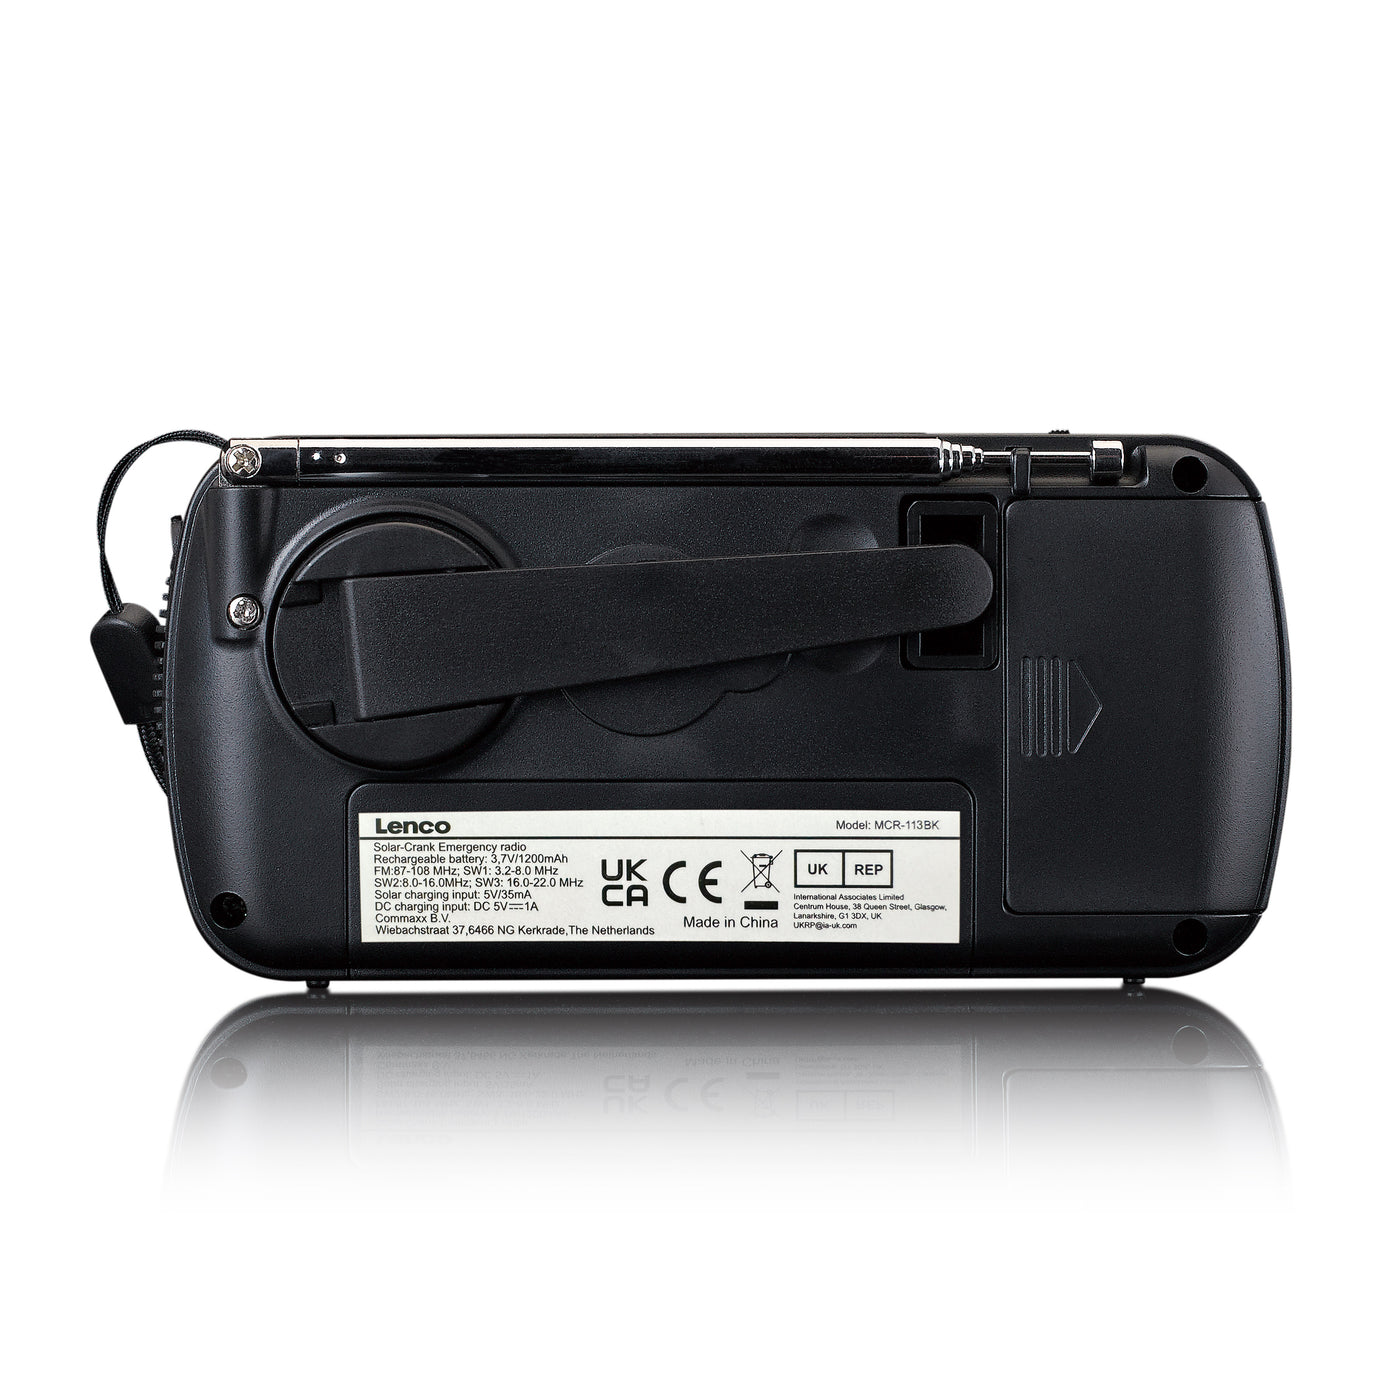 Lenco MCR-113BK - Tragbares Notfall Kurbelradio mit Aufziehfunktion, Taschenlampe und Powerbank in einem - Schwarz